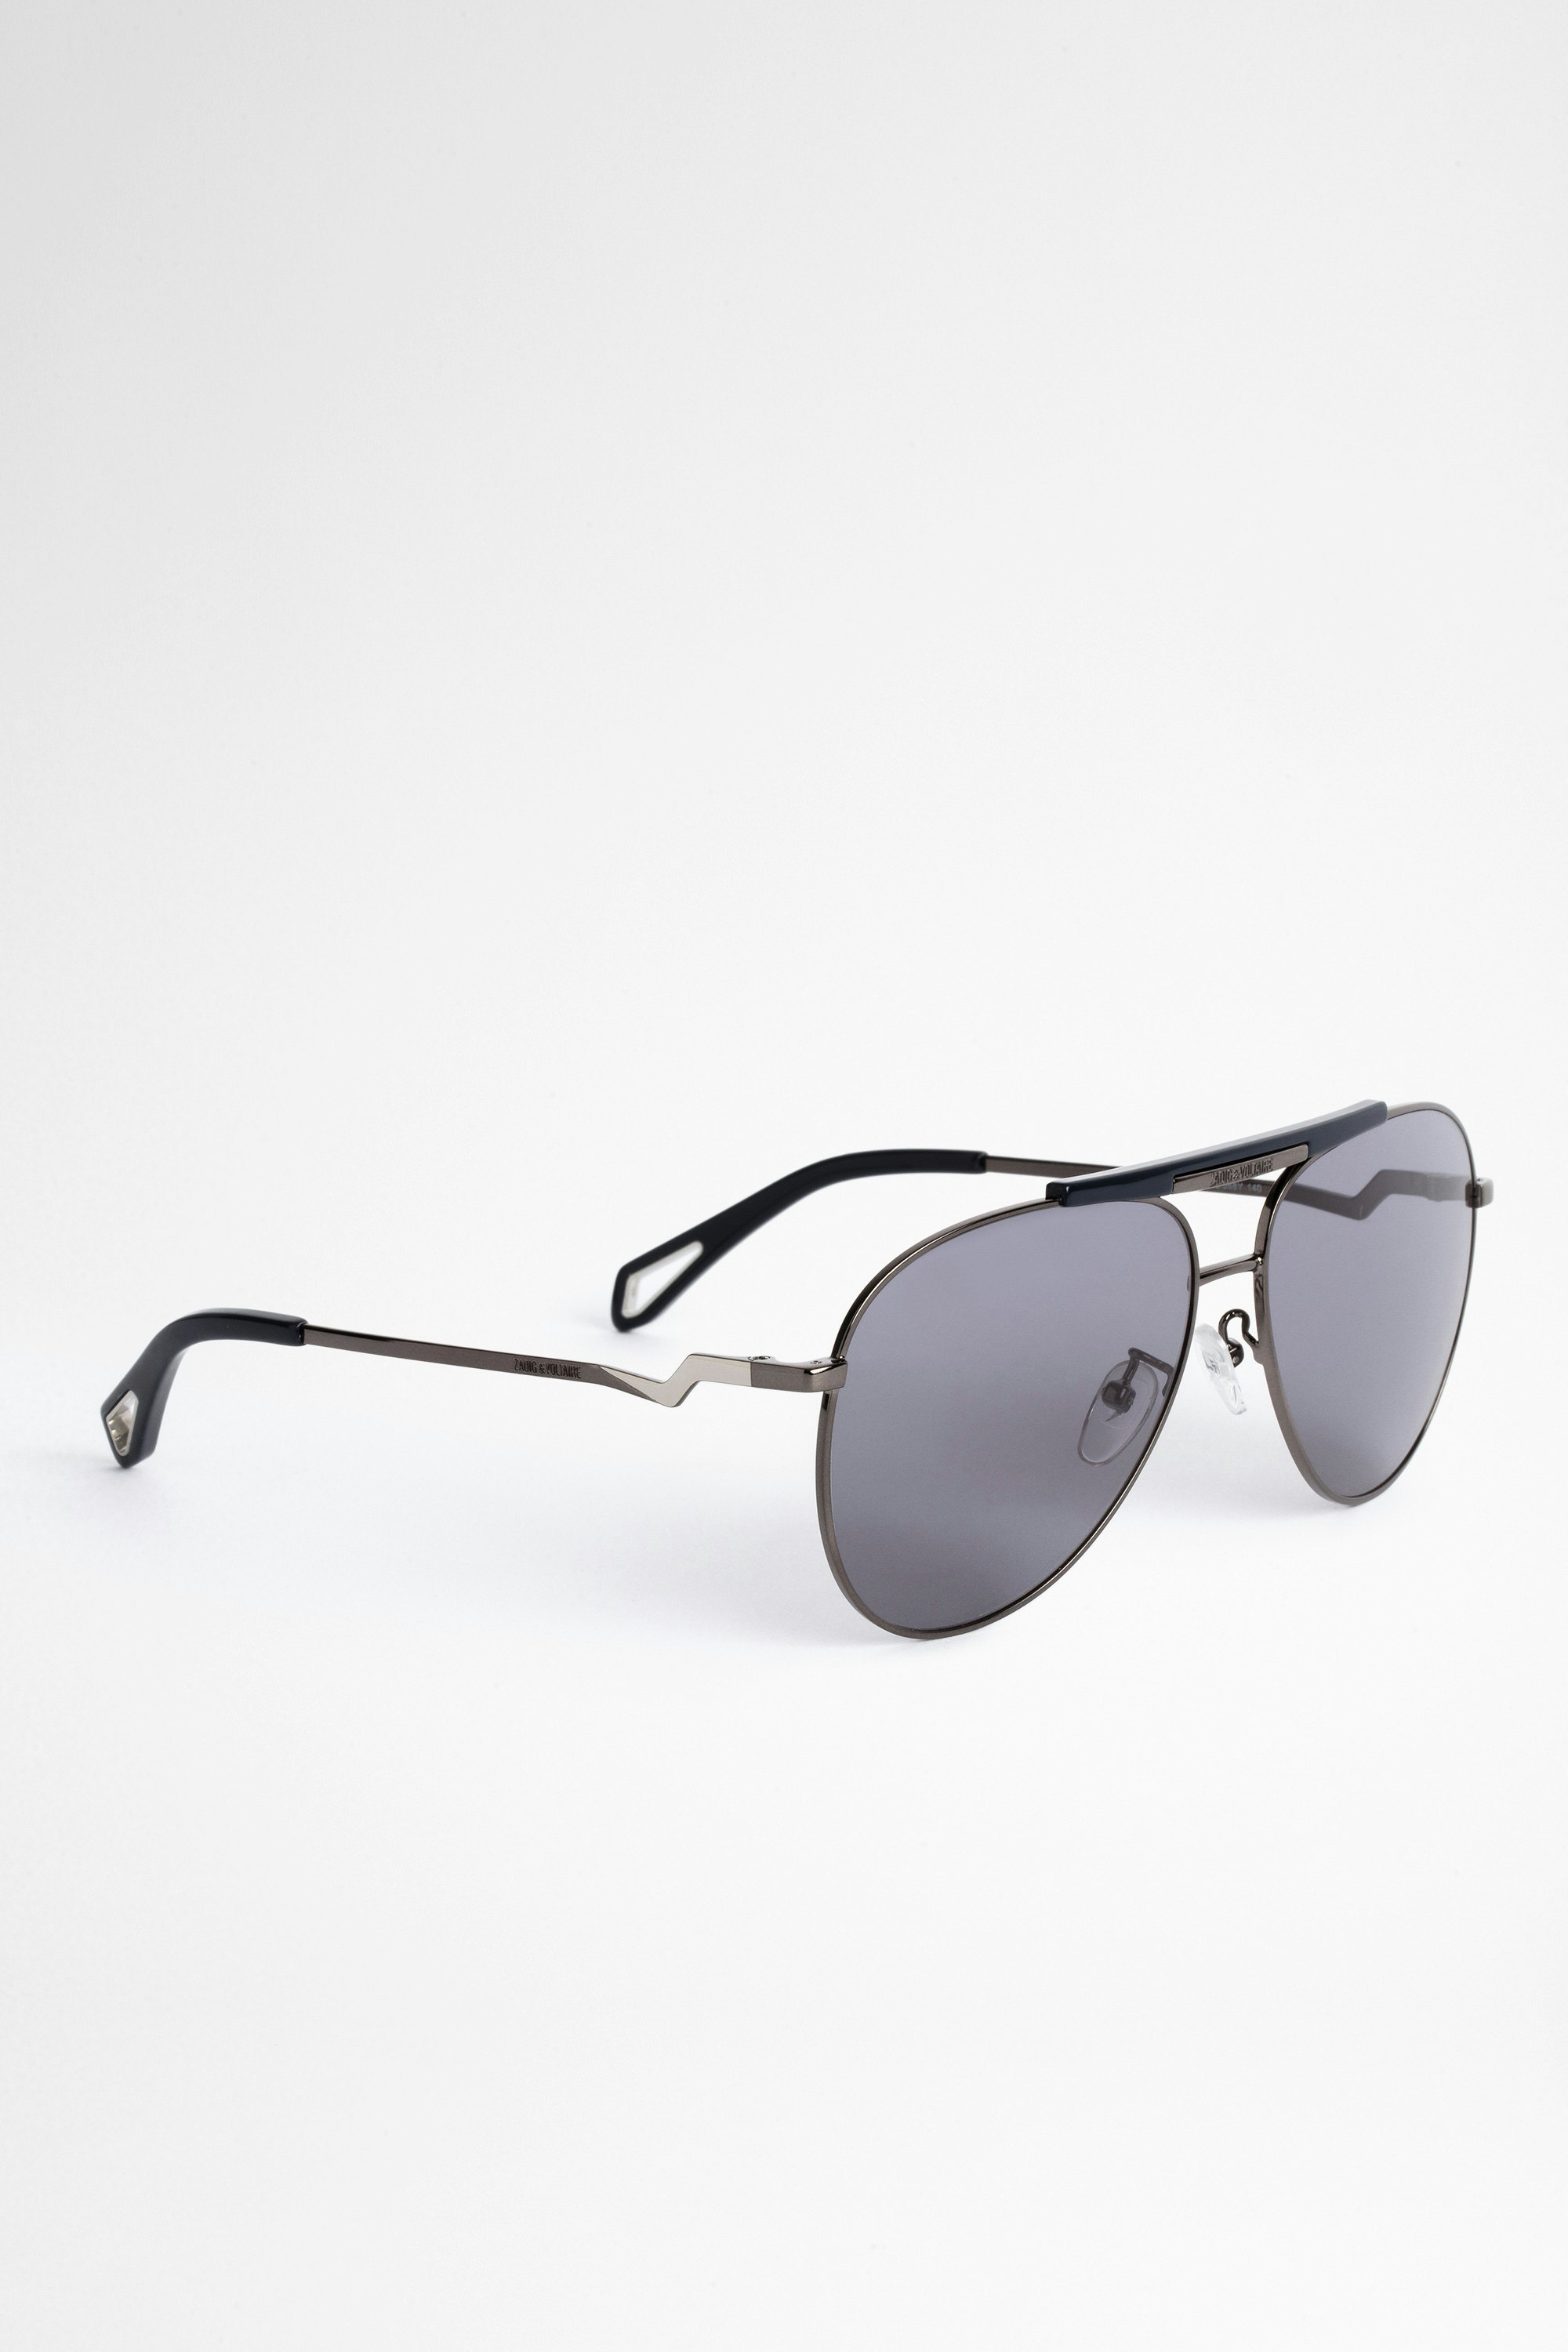 Brille SZV280 Graue Unisex-Sonnenbrille